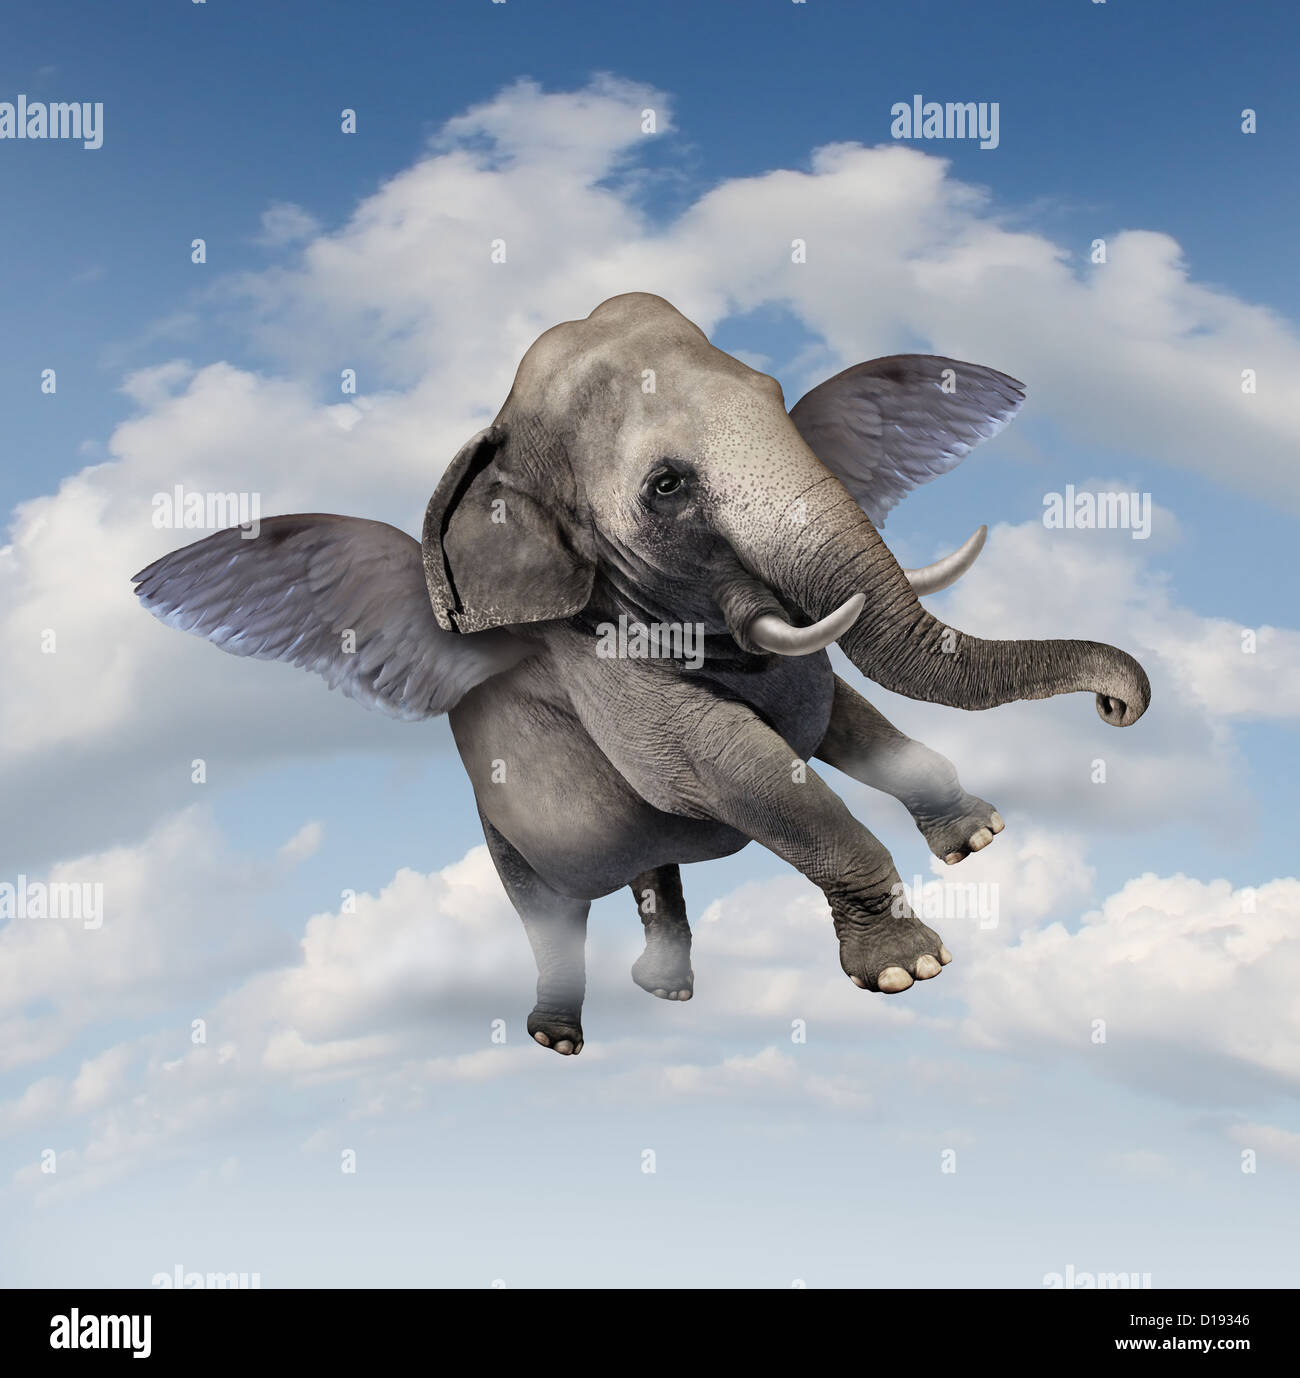 Potenzial und Möglichkeiten Konzept mit einem realistischen Elefanten fliegen in der Luft mit Flügel als Symbol für Erfolg Unternehmen Stockfoto